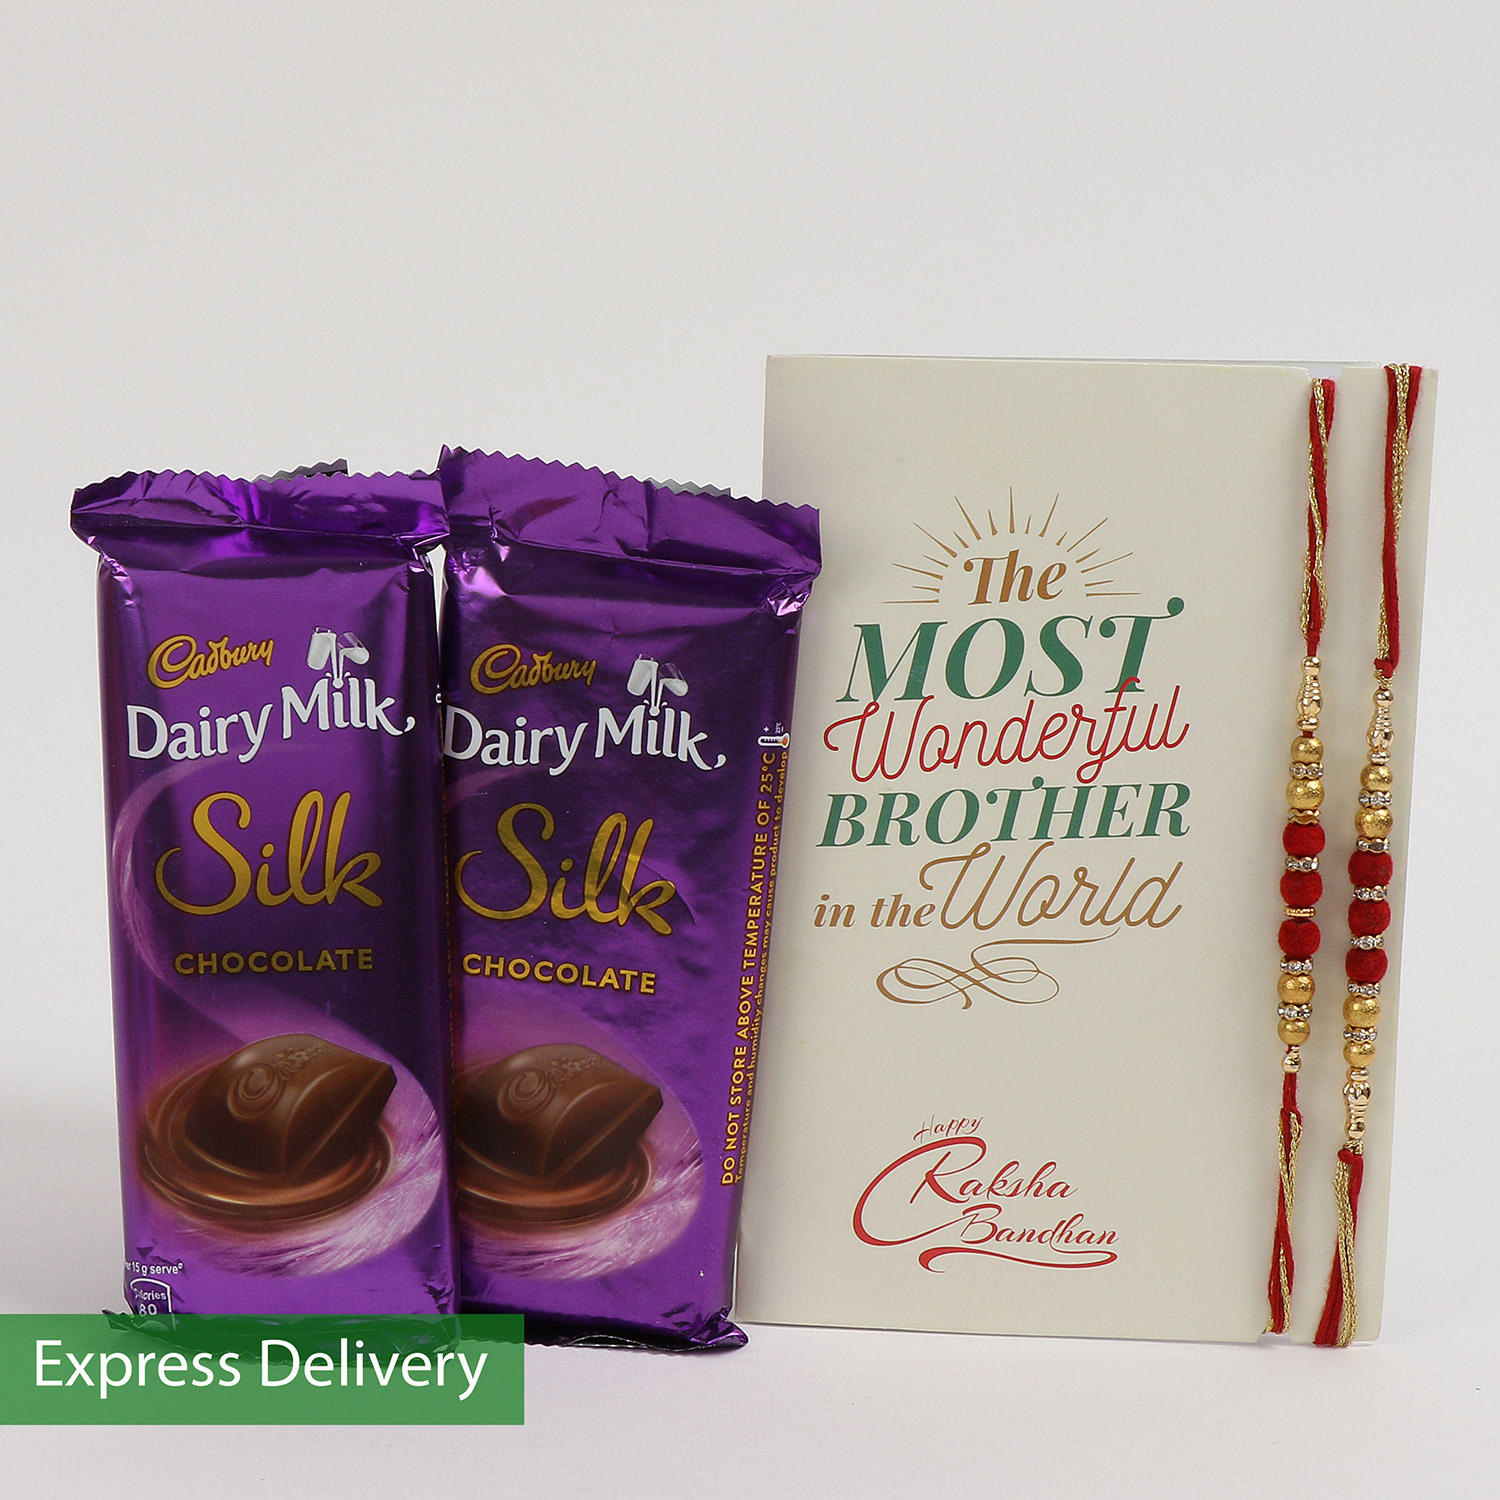 Raksha Bandhan Chocolates Gifts